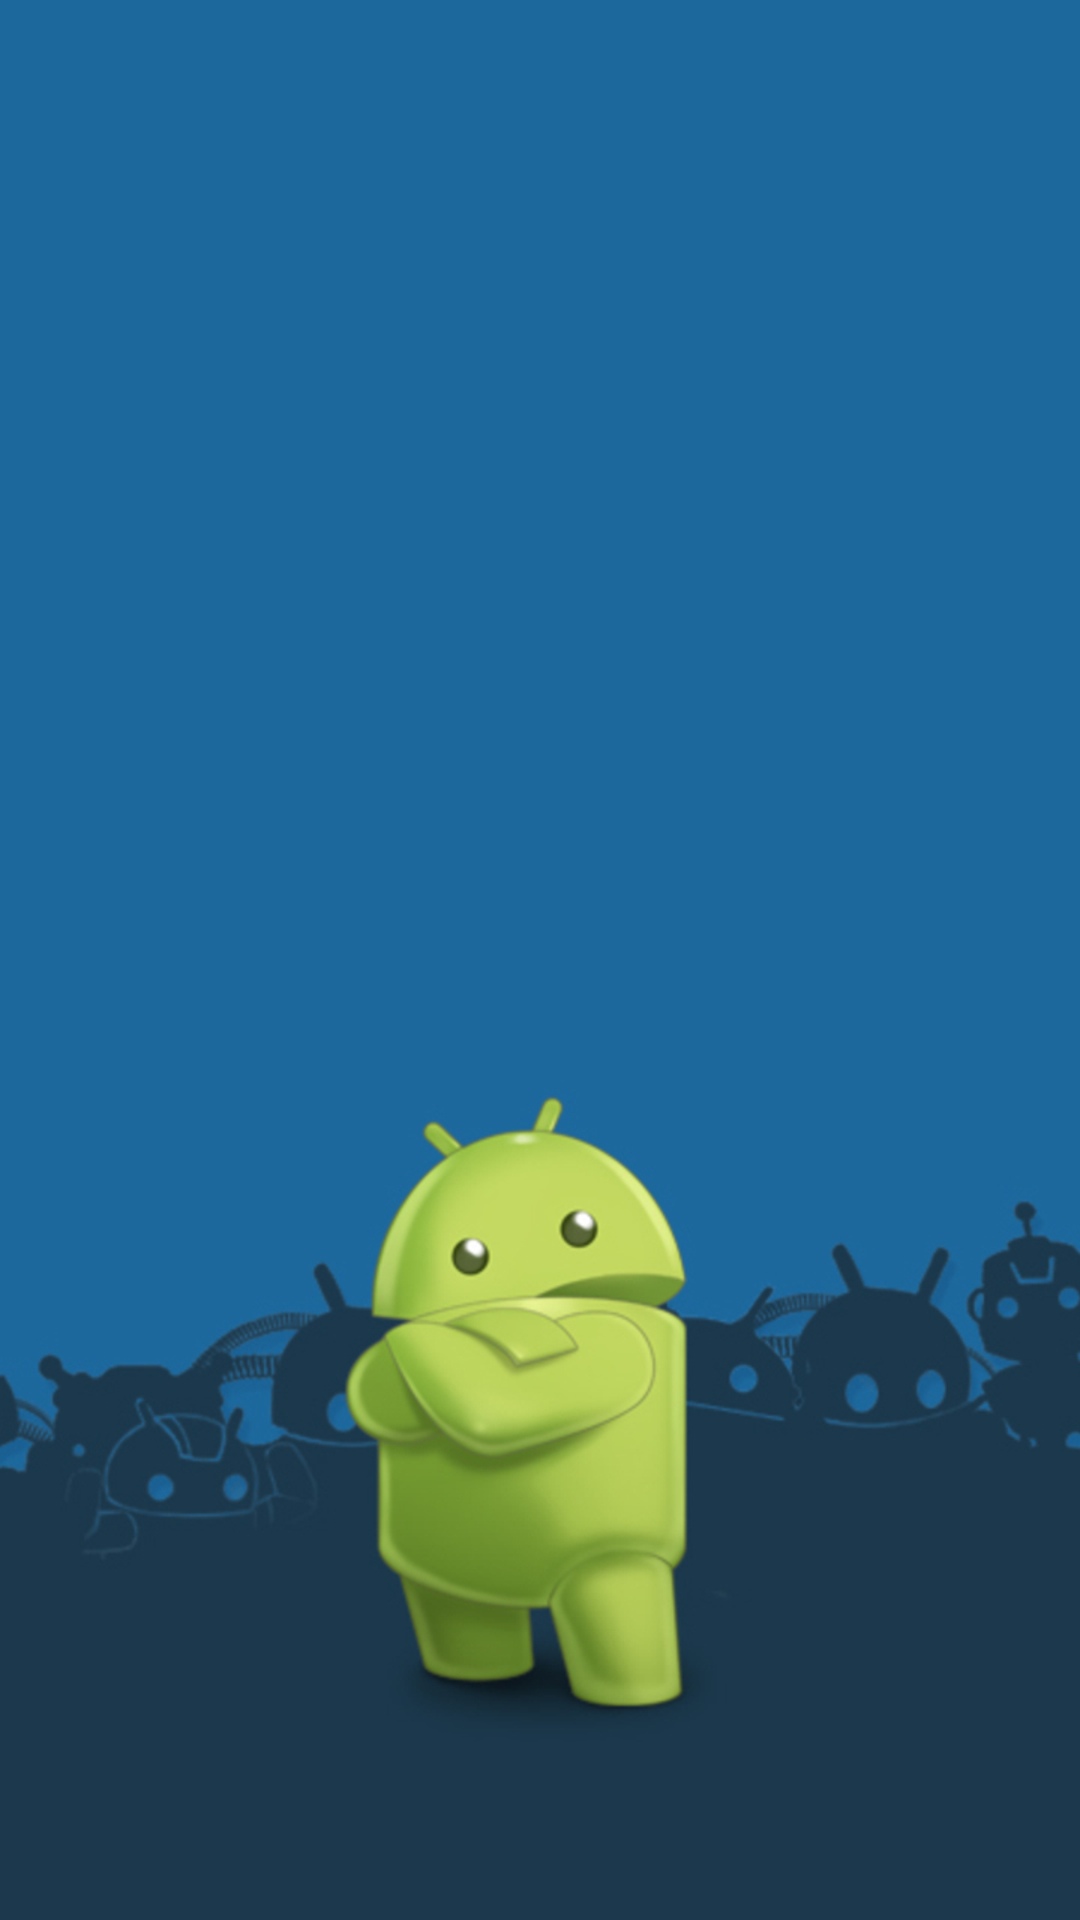 fonds d'écran pour smartphone android,bleu,vert,dessin animé,jaune,illustration